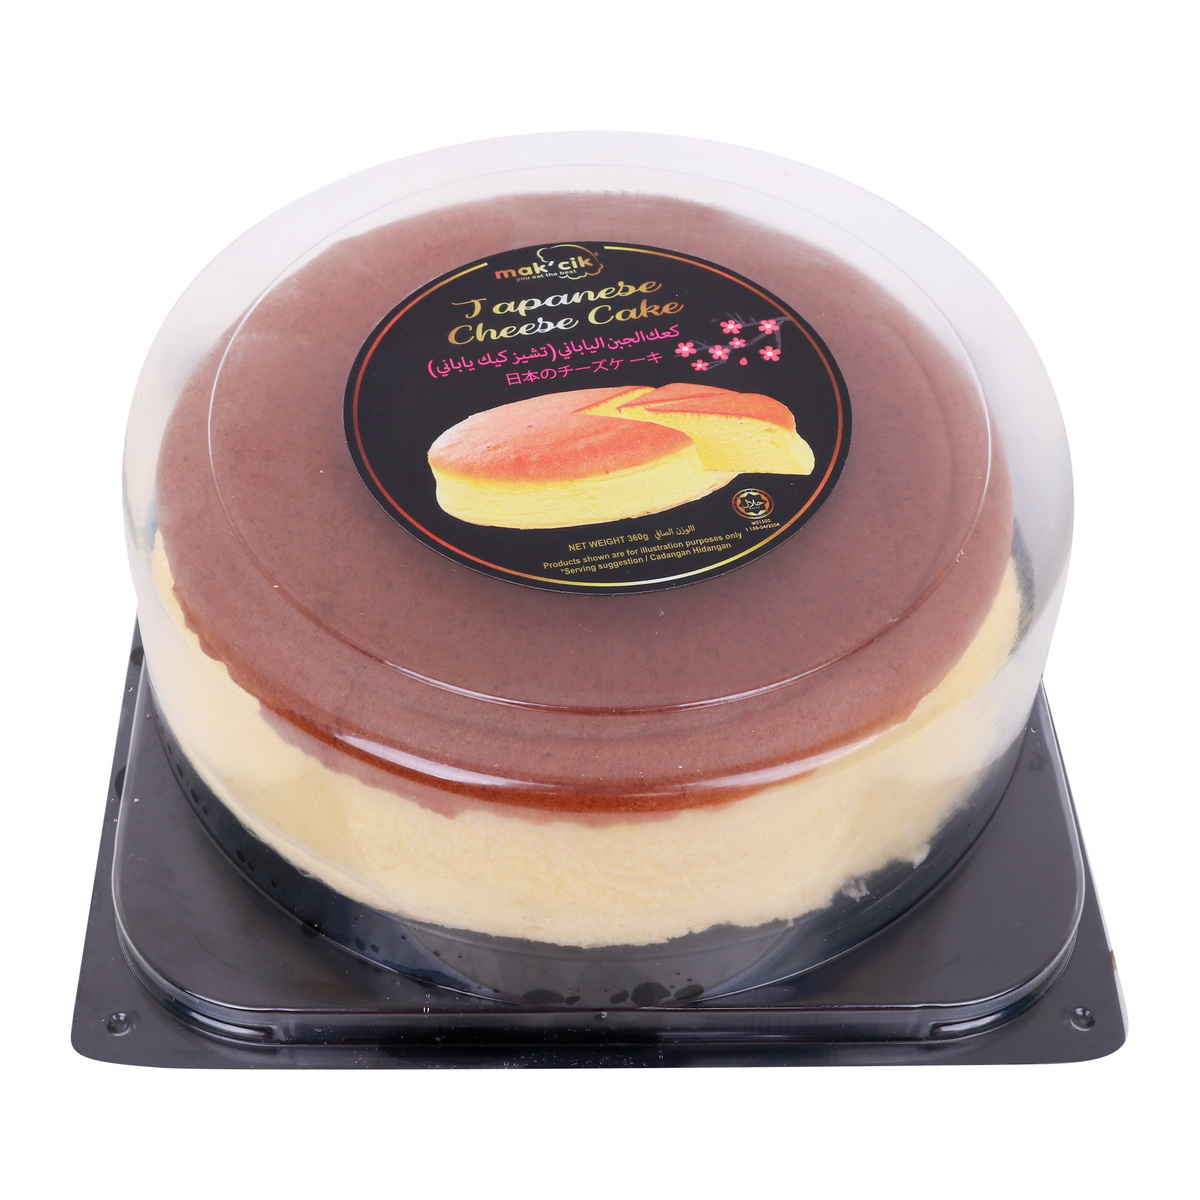 Buy Sydney House Japanese Cheese Cake 1 pc Online at Best Price | Pre Pack Cakes | Lulu KSA in Saudi Arabia